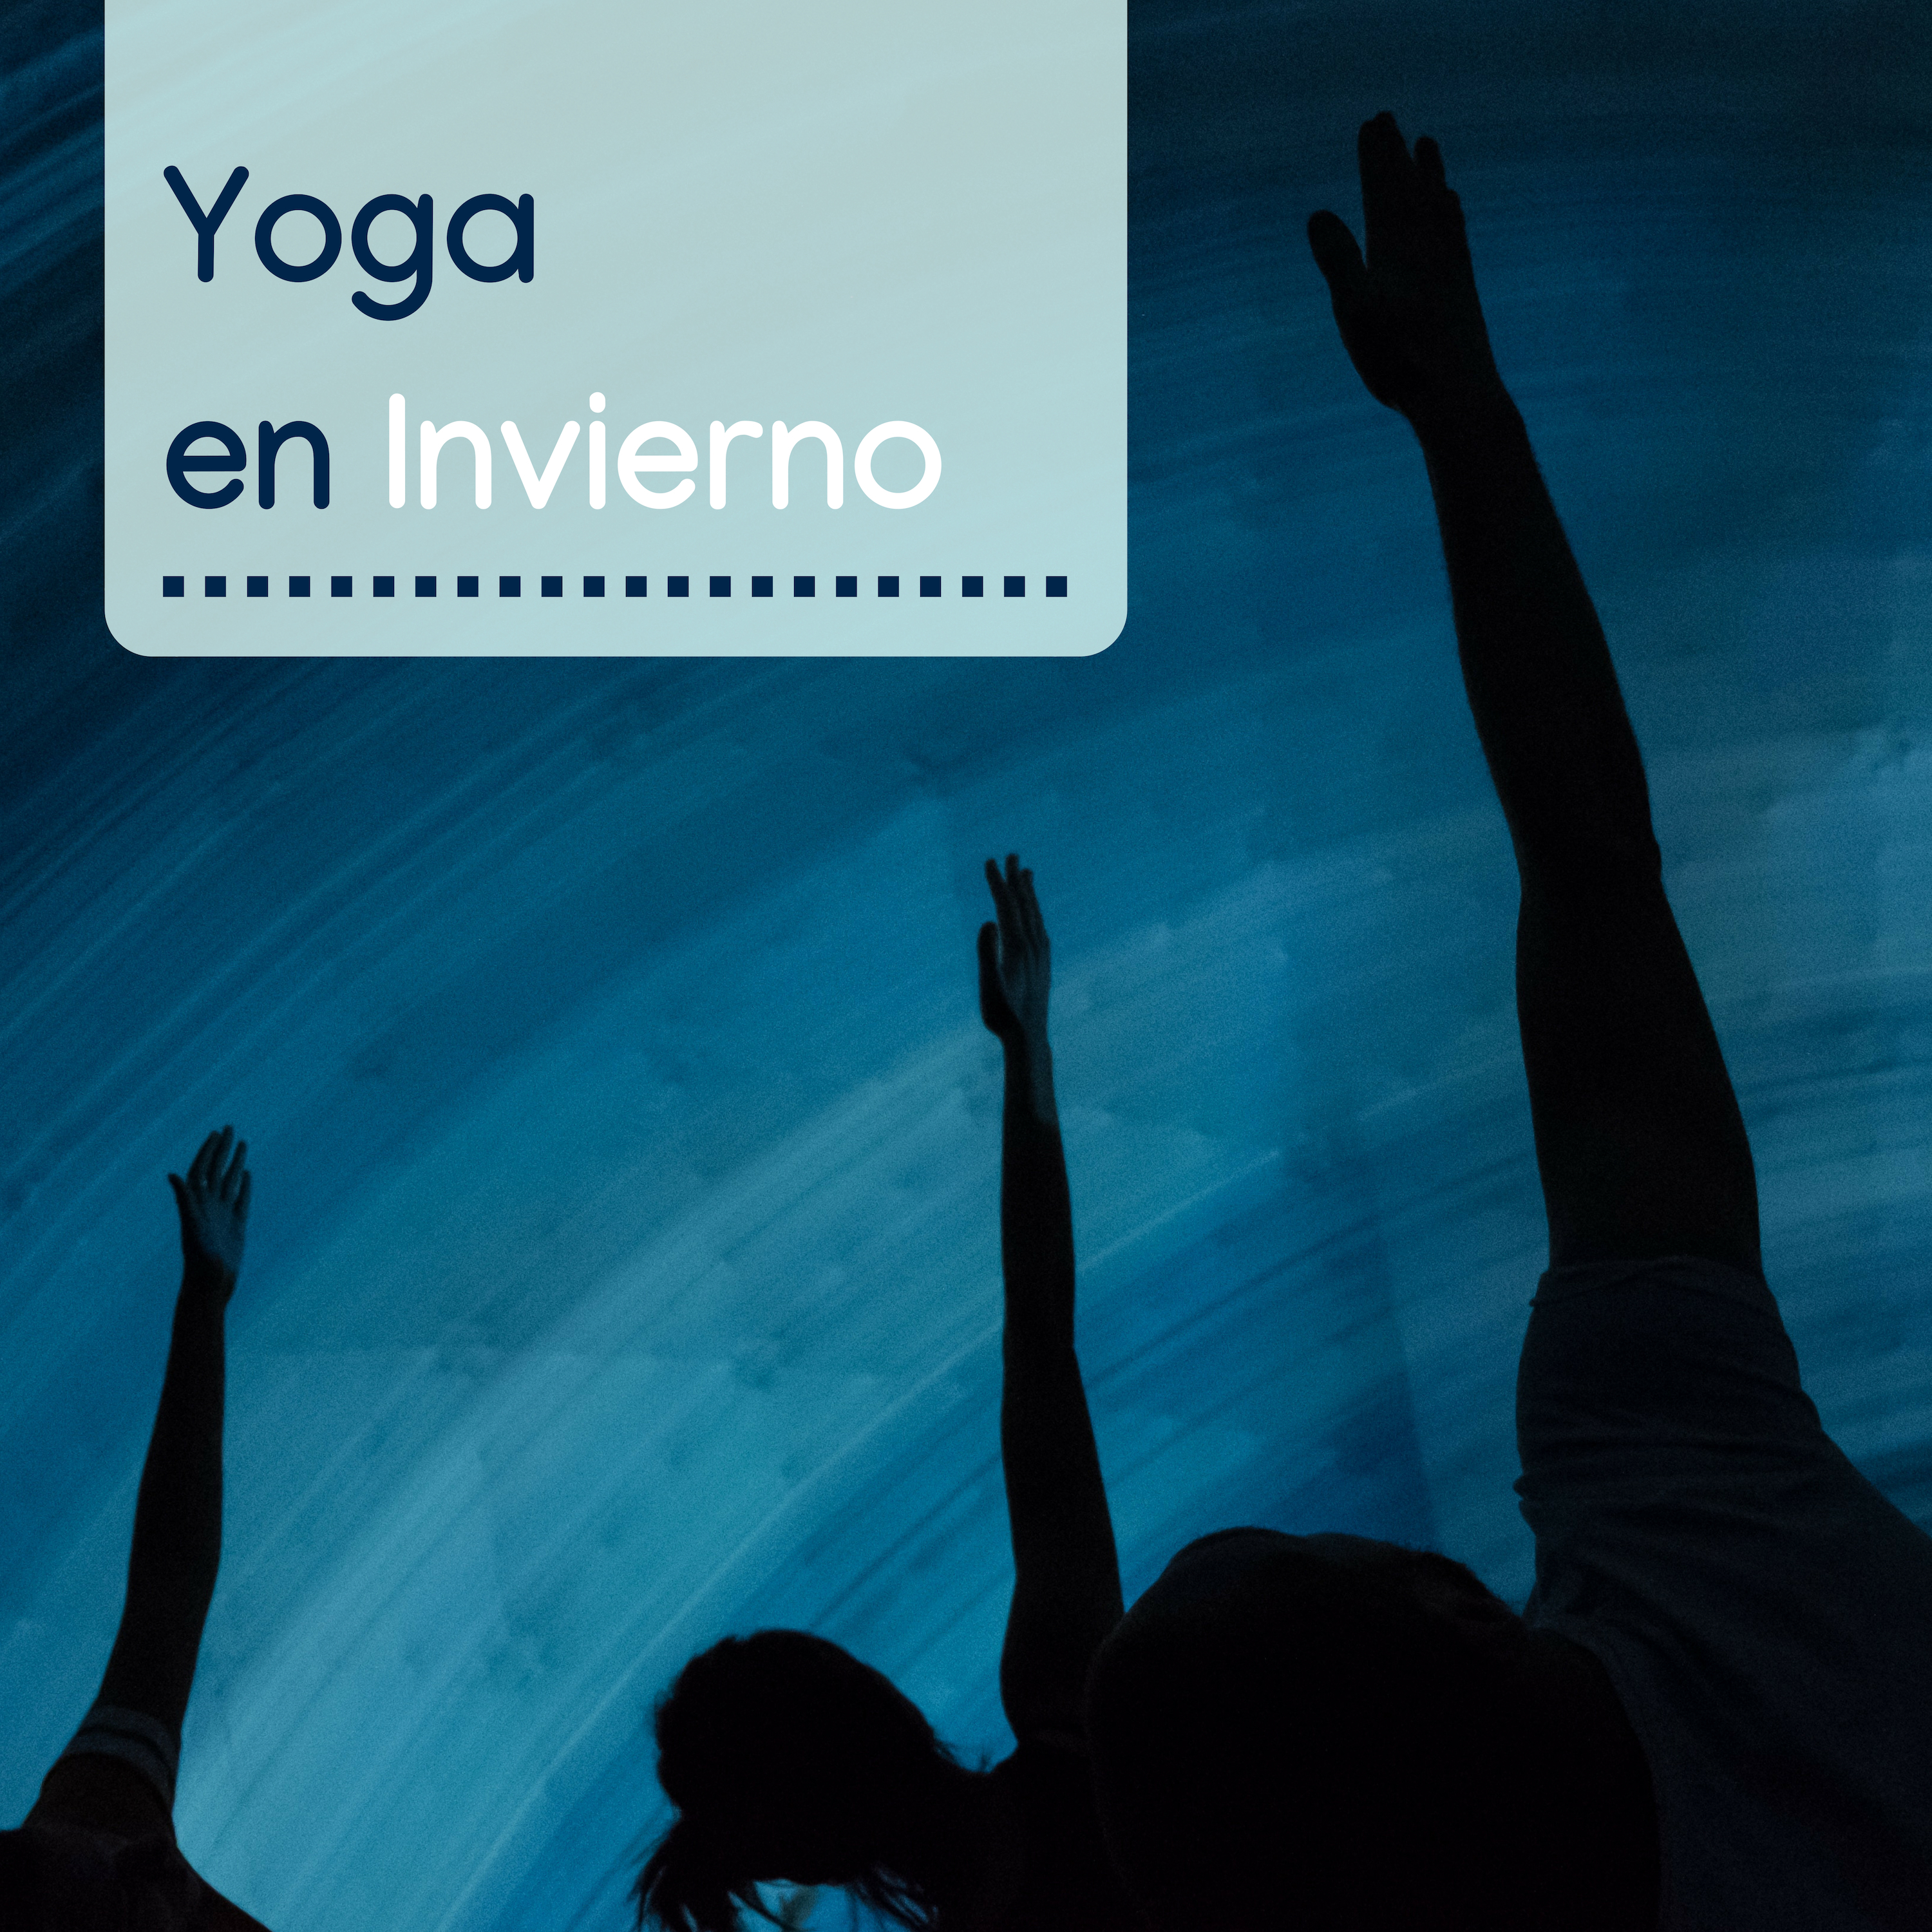 Yoga en Invierno  Fondo de Mu sica para Clases de Yoga, Asanas y Momentos de Relajacio n y Meditacio n